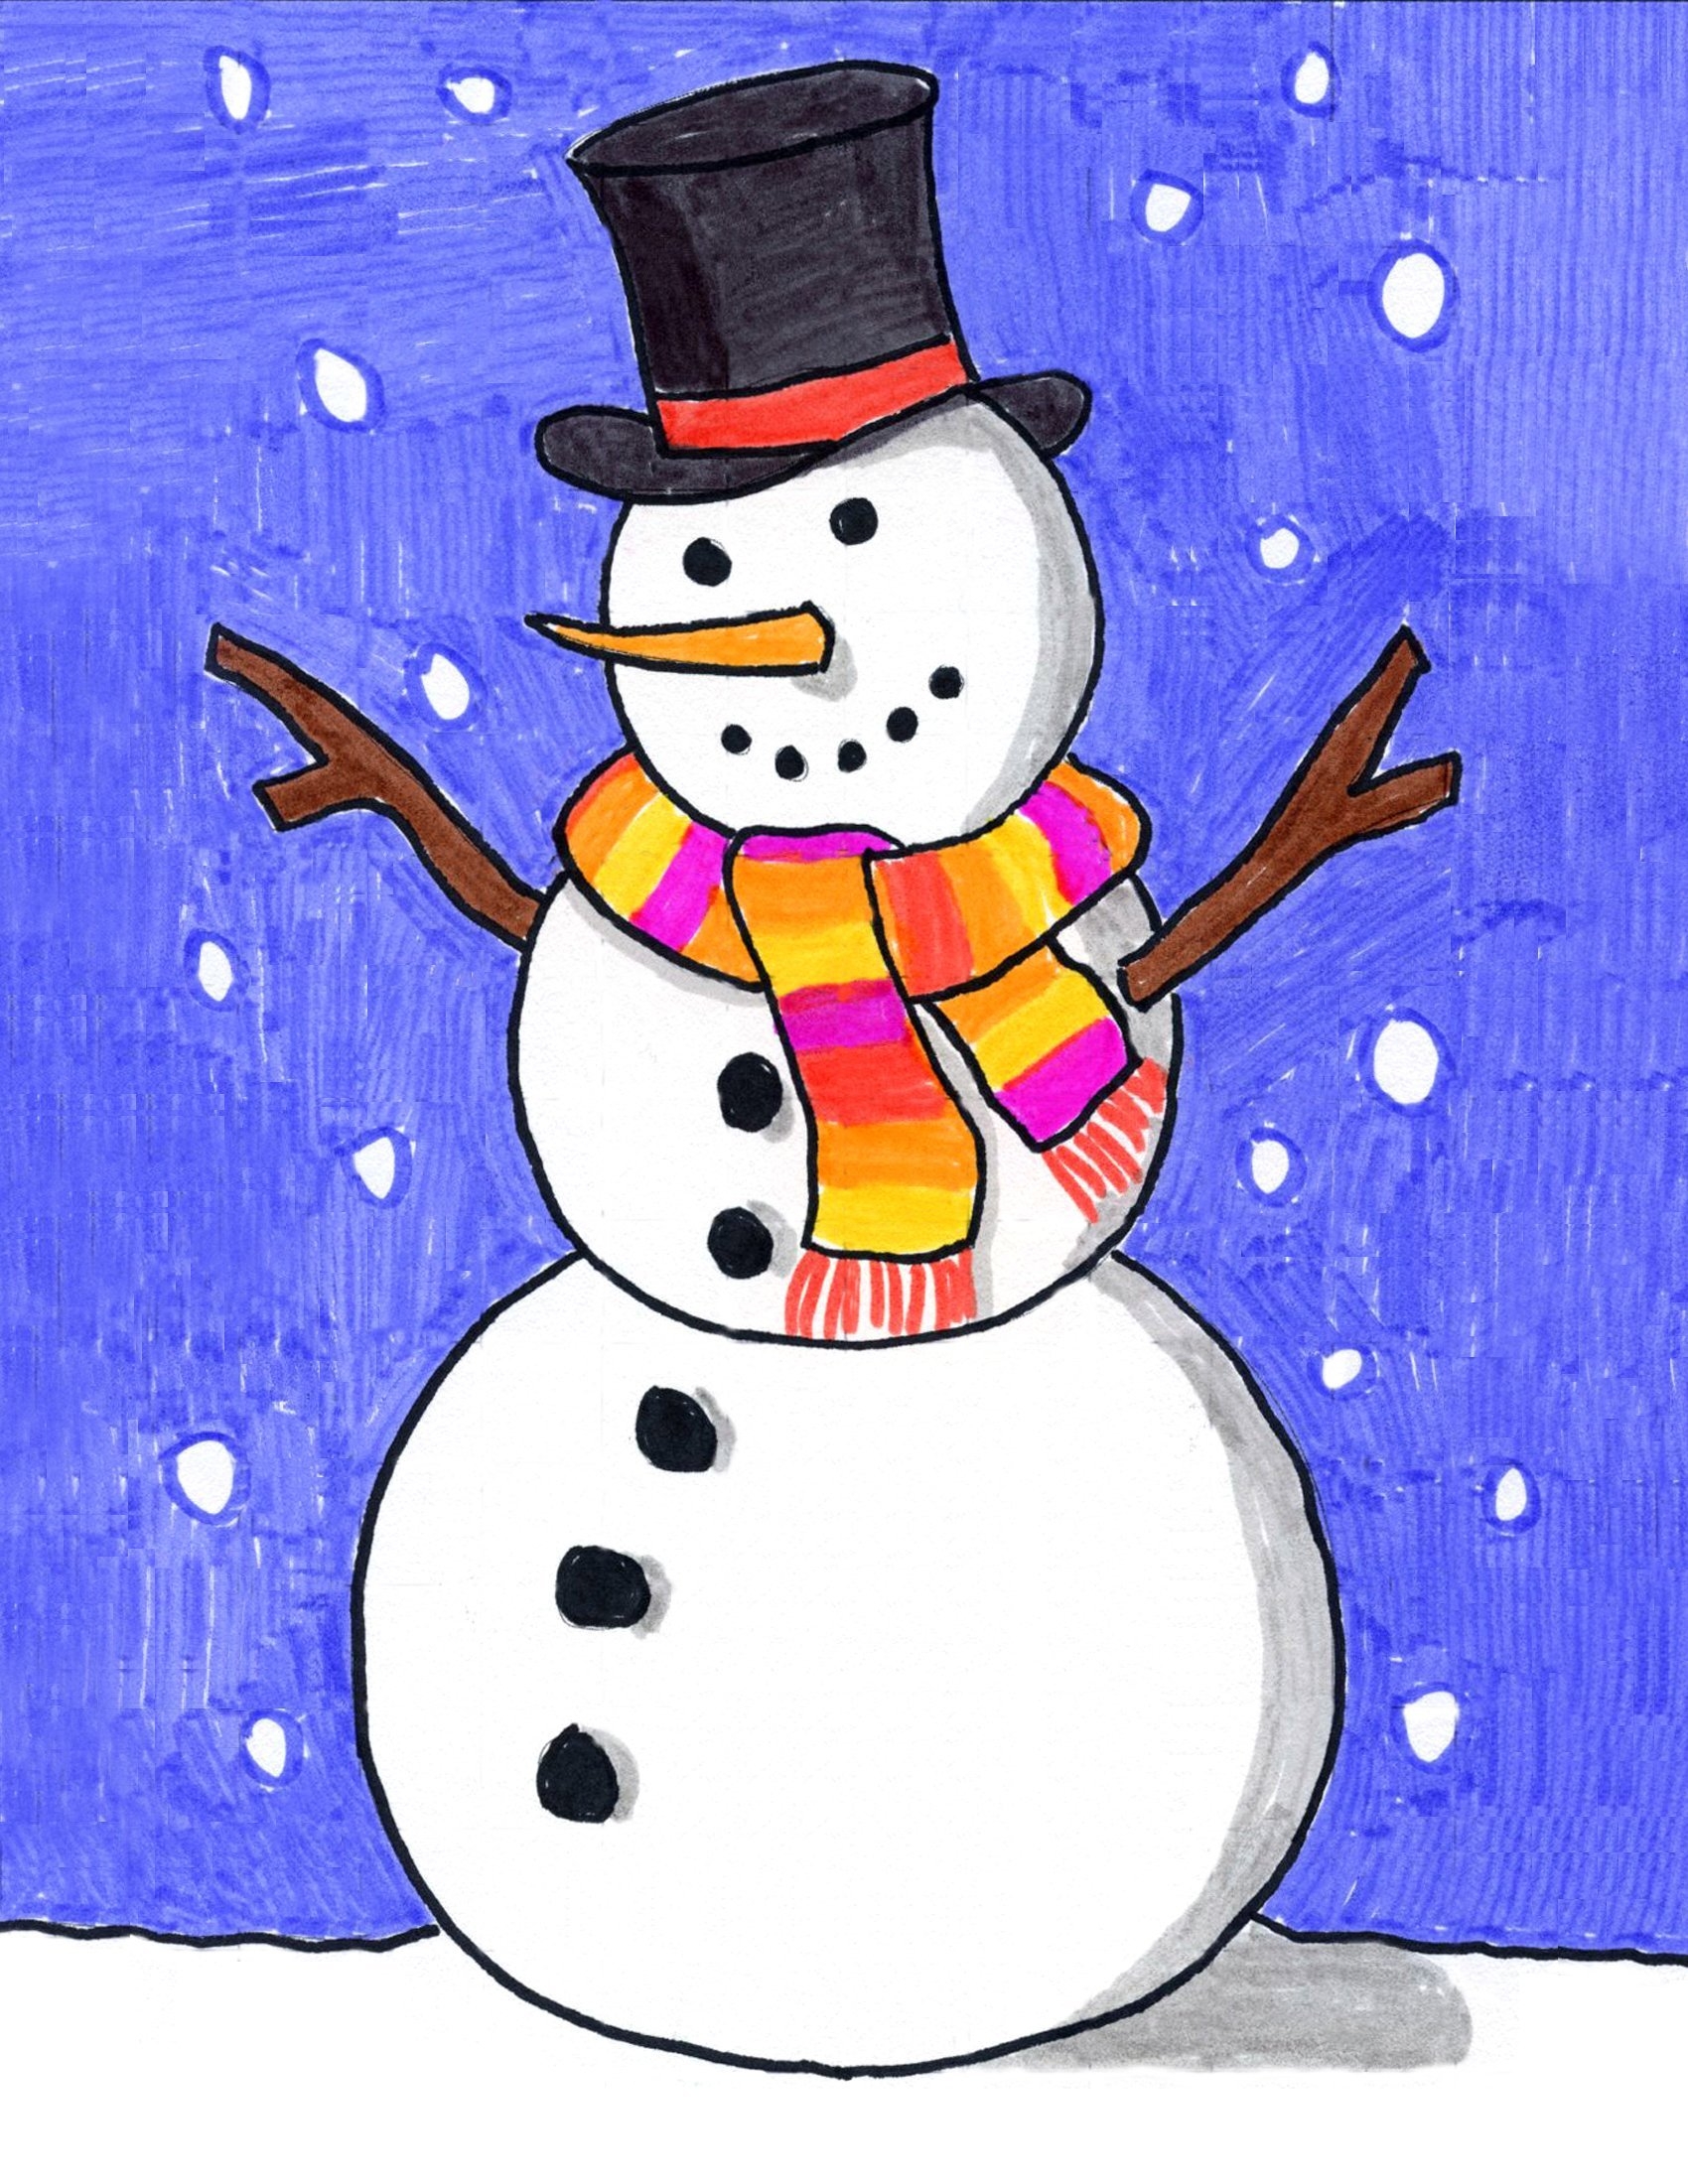 Фреска-открытка «Весёлого Нового года» Снеговик и енотик